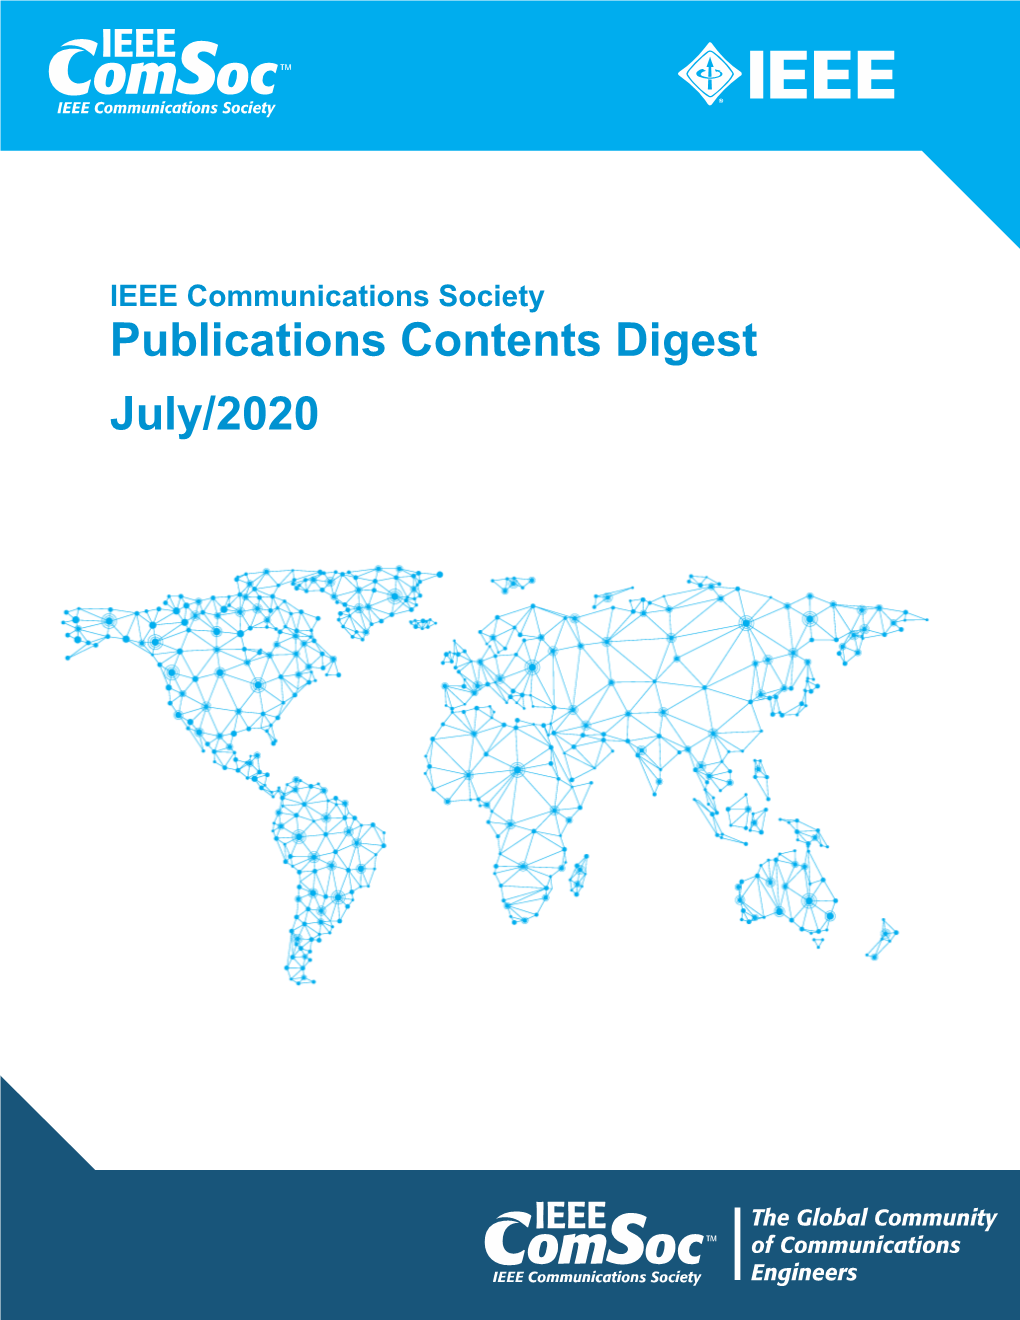 Publications Contents Digest July/2020